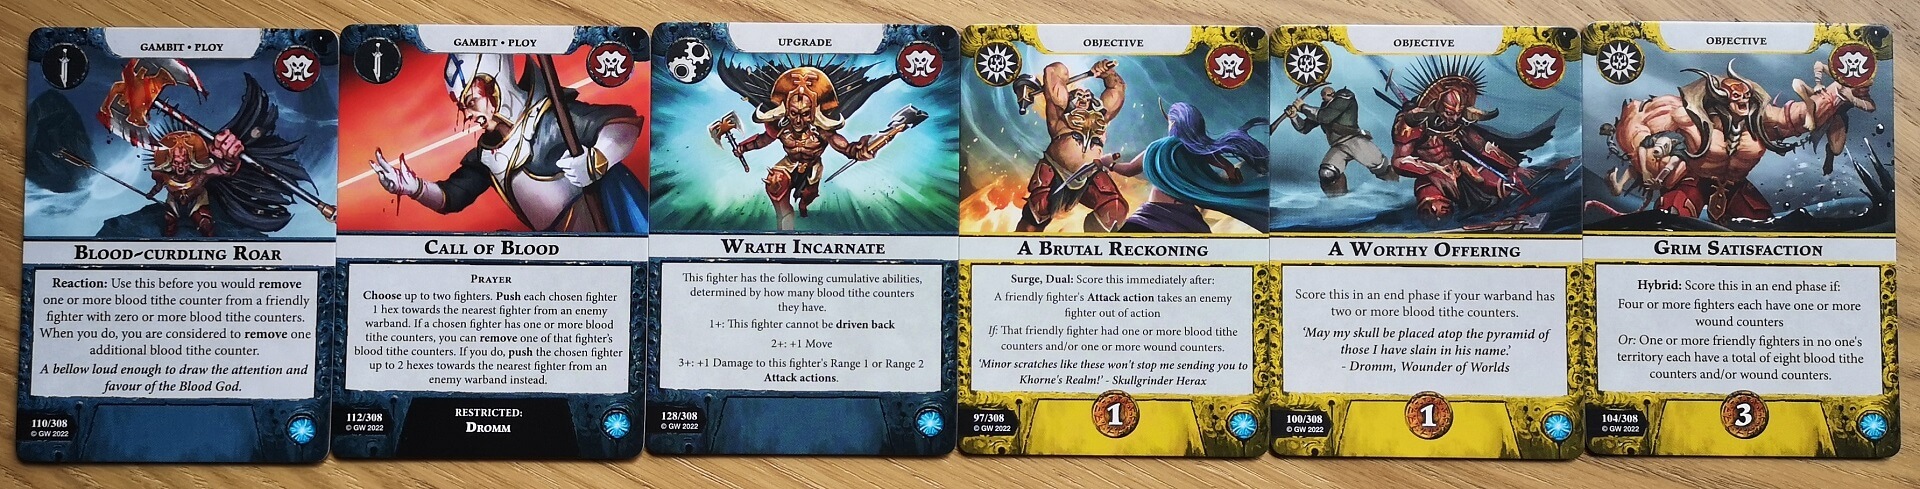 Cards used in playing Warhammer Underworlds Gorechosen of Dromm.